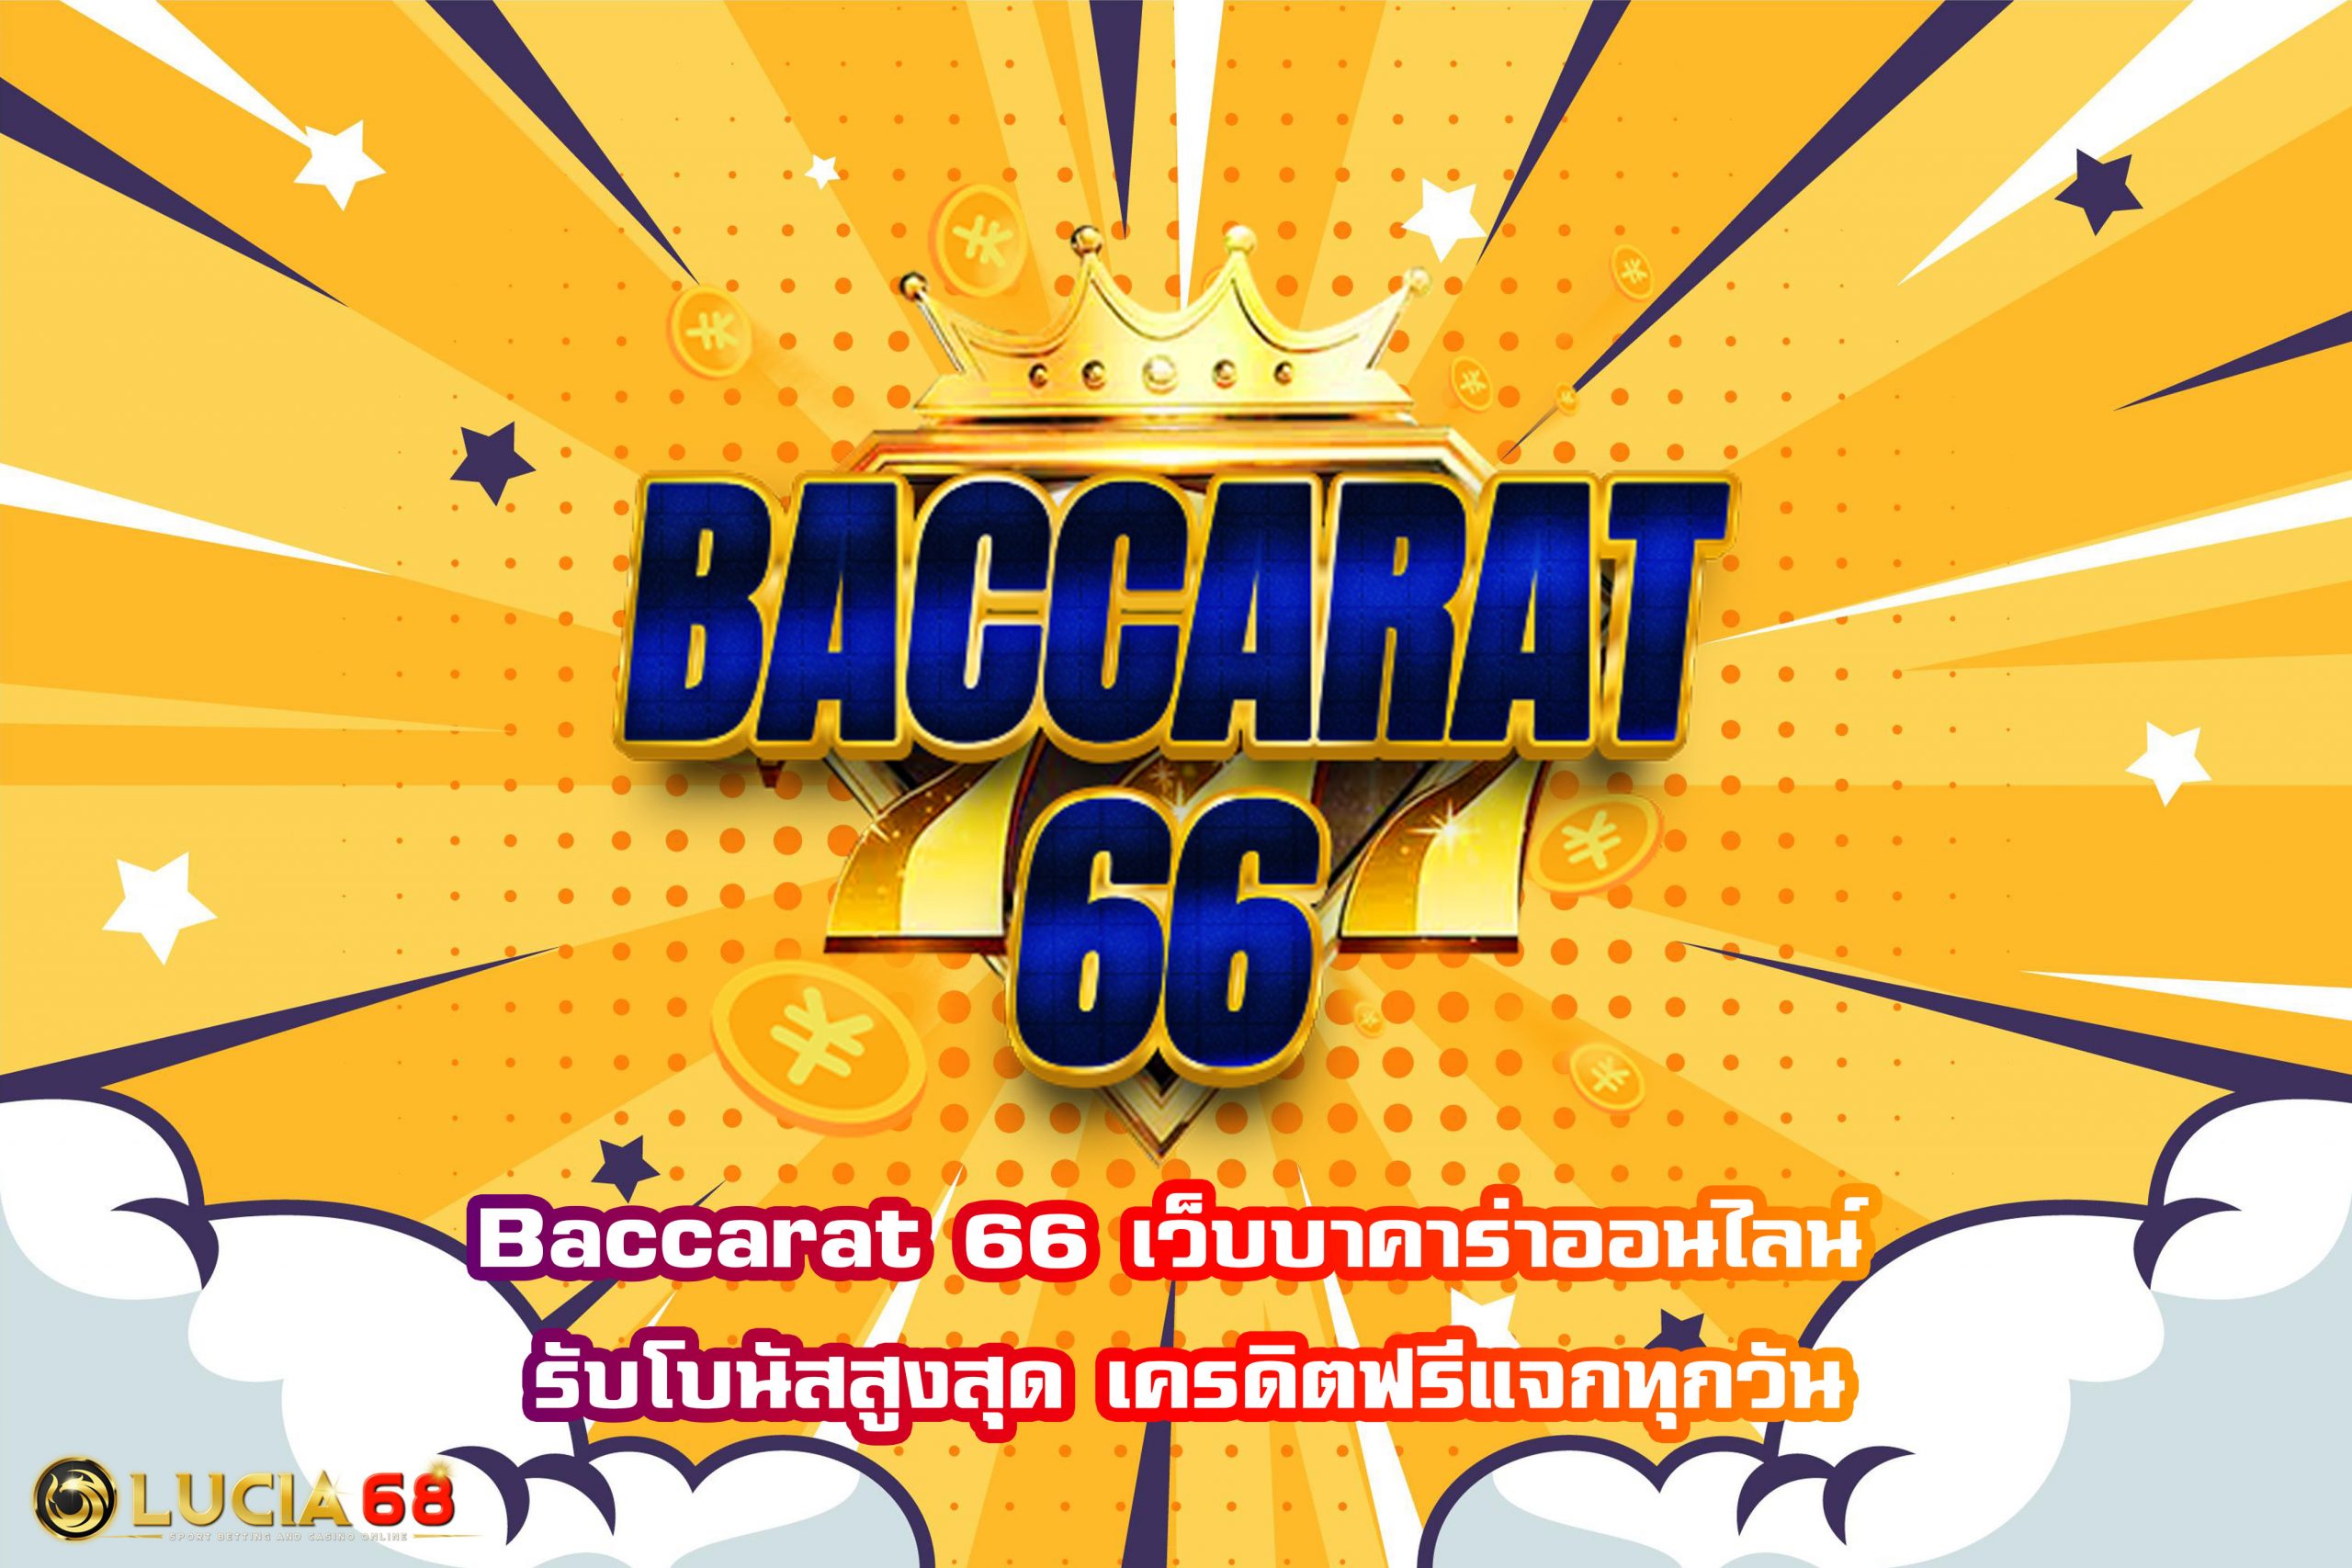 Baccarat 66 เว็บบาคาร่าออนไลน์ รับโบนัสสูงสุด เครดิตฟรีแจกทุกวัน